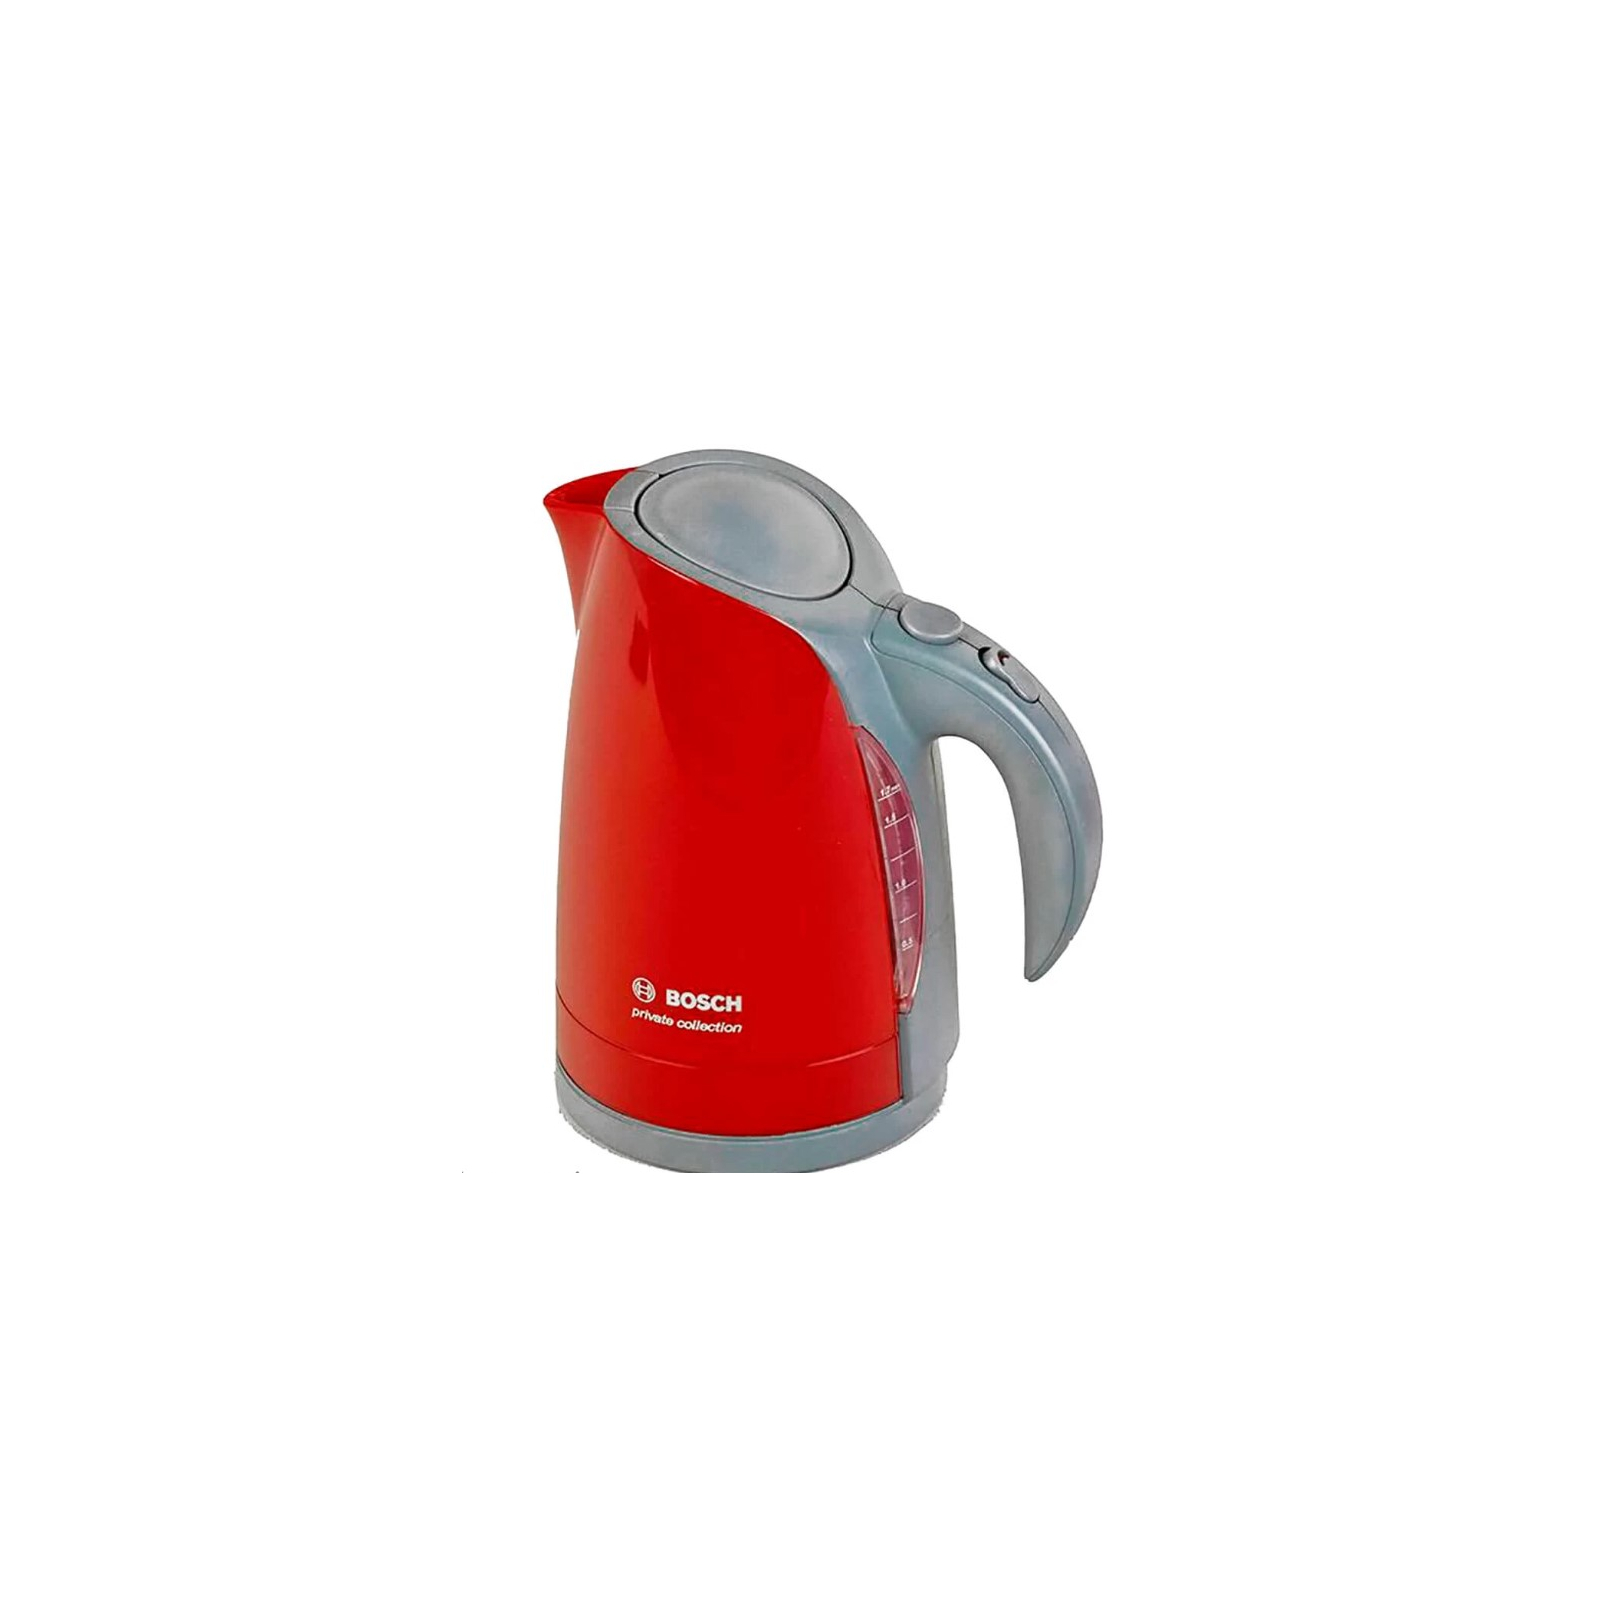 Ігровий набір Bosch Чайник , червоно-сірий (9548)